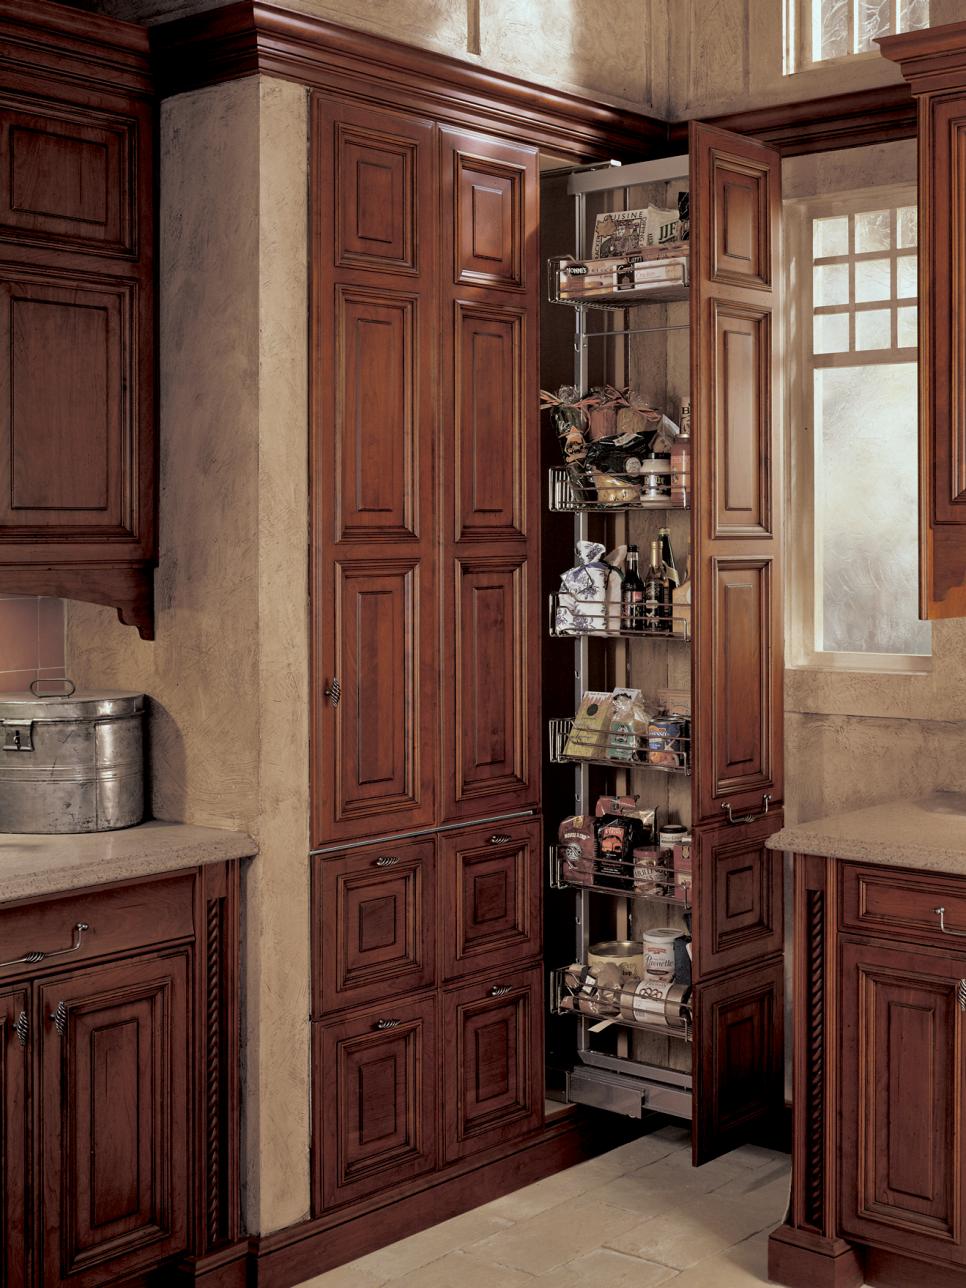 19 Kitchen Cabinet Storage Systems | DIY